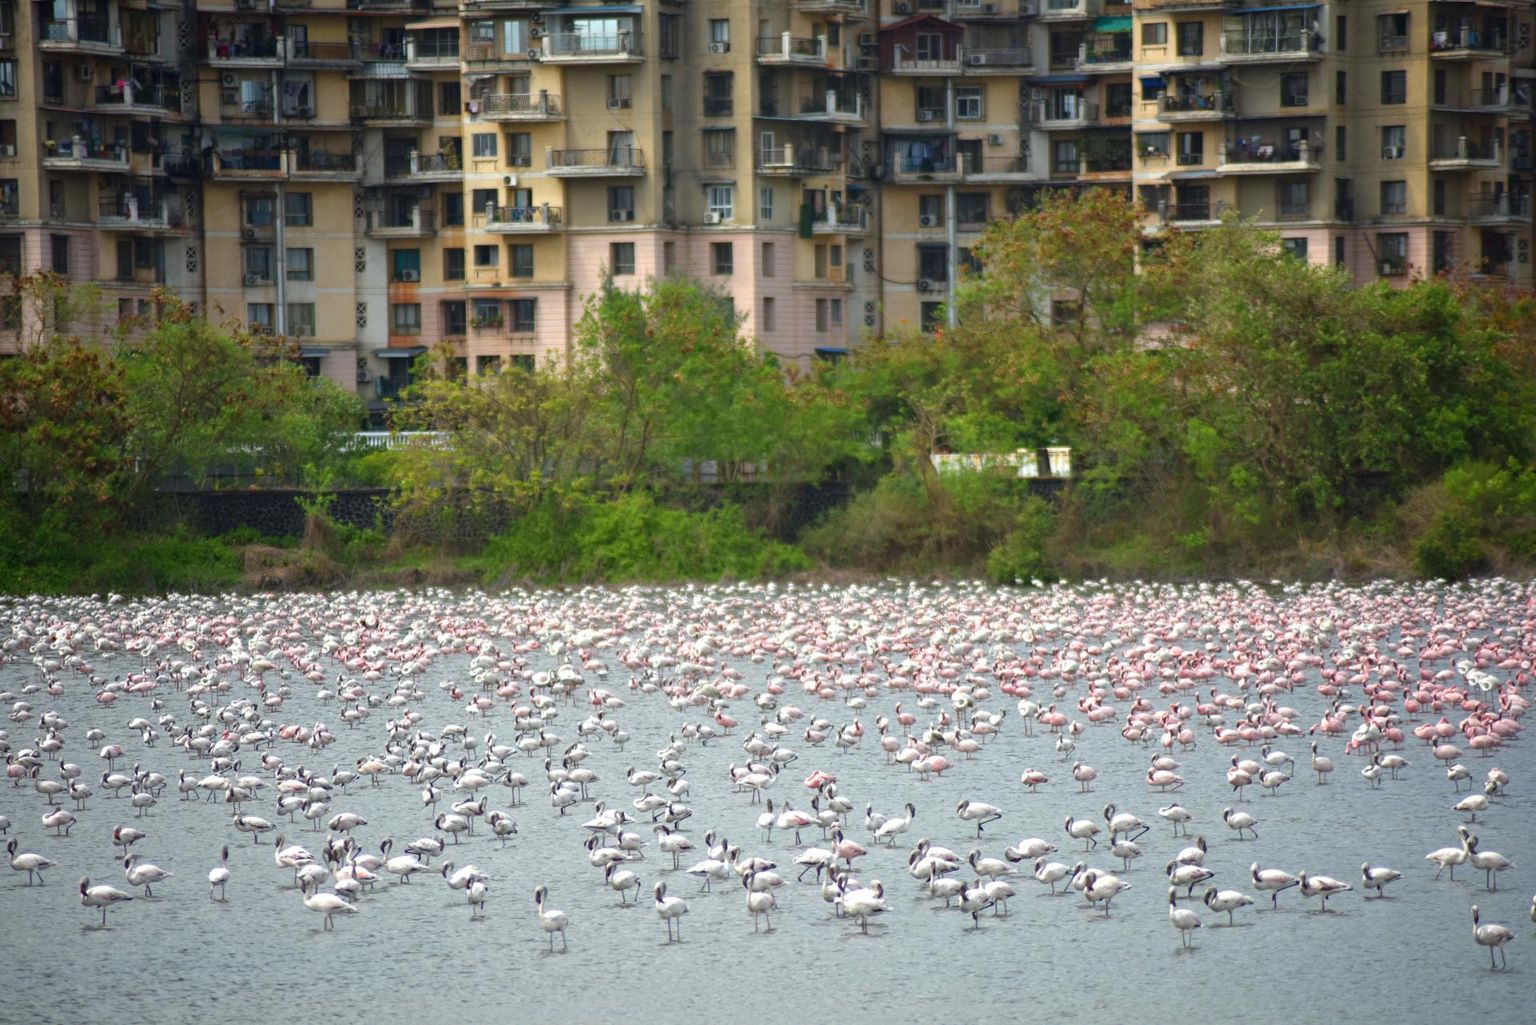 Otse Navi Mumbai kõrgmajade ääres asuvale märgalale on tänavu saabunud enneolematult palju flamingosid.